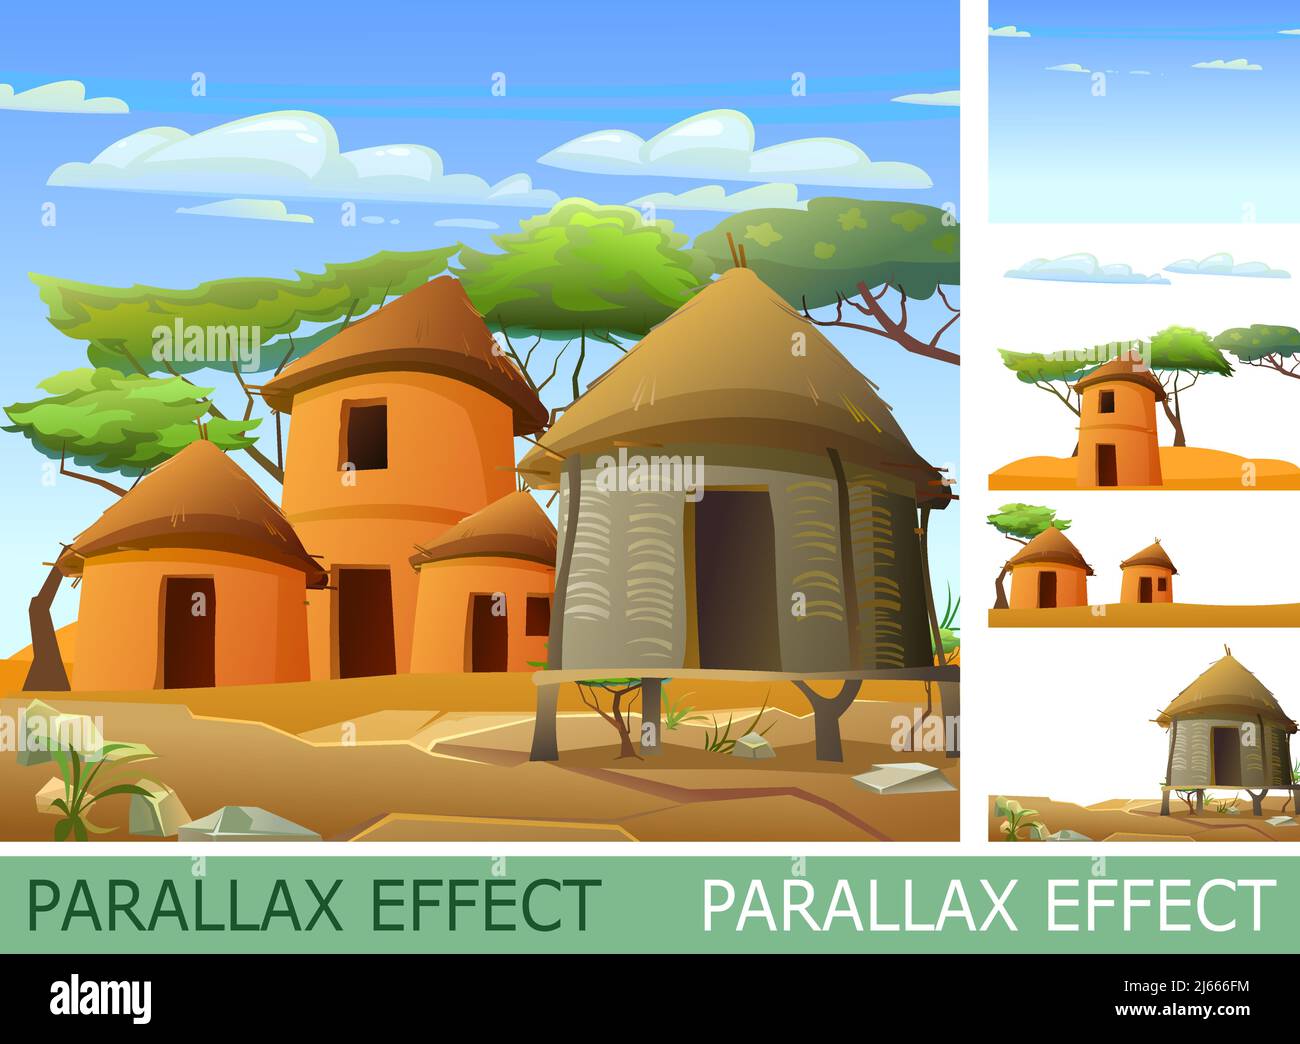 Afrika Dorf mit Parallax Effekt. Ländliche Häuser aus Lehm und Stroh. Afrikanische Landschaft. Felsige Wüste und blauer Himmel. Akazienbäume. Vektor Stock Vektor